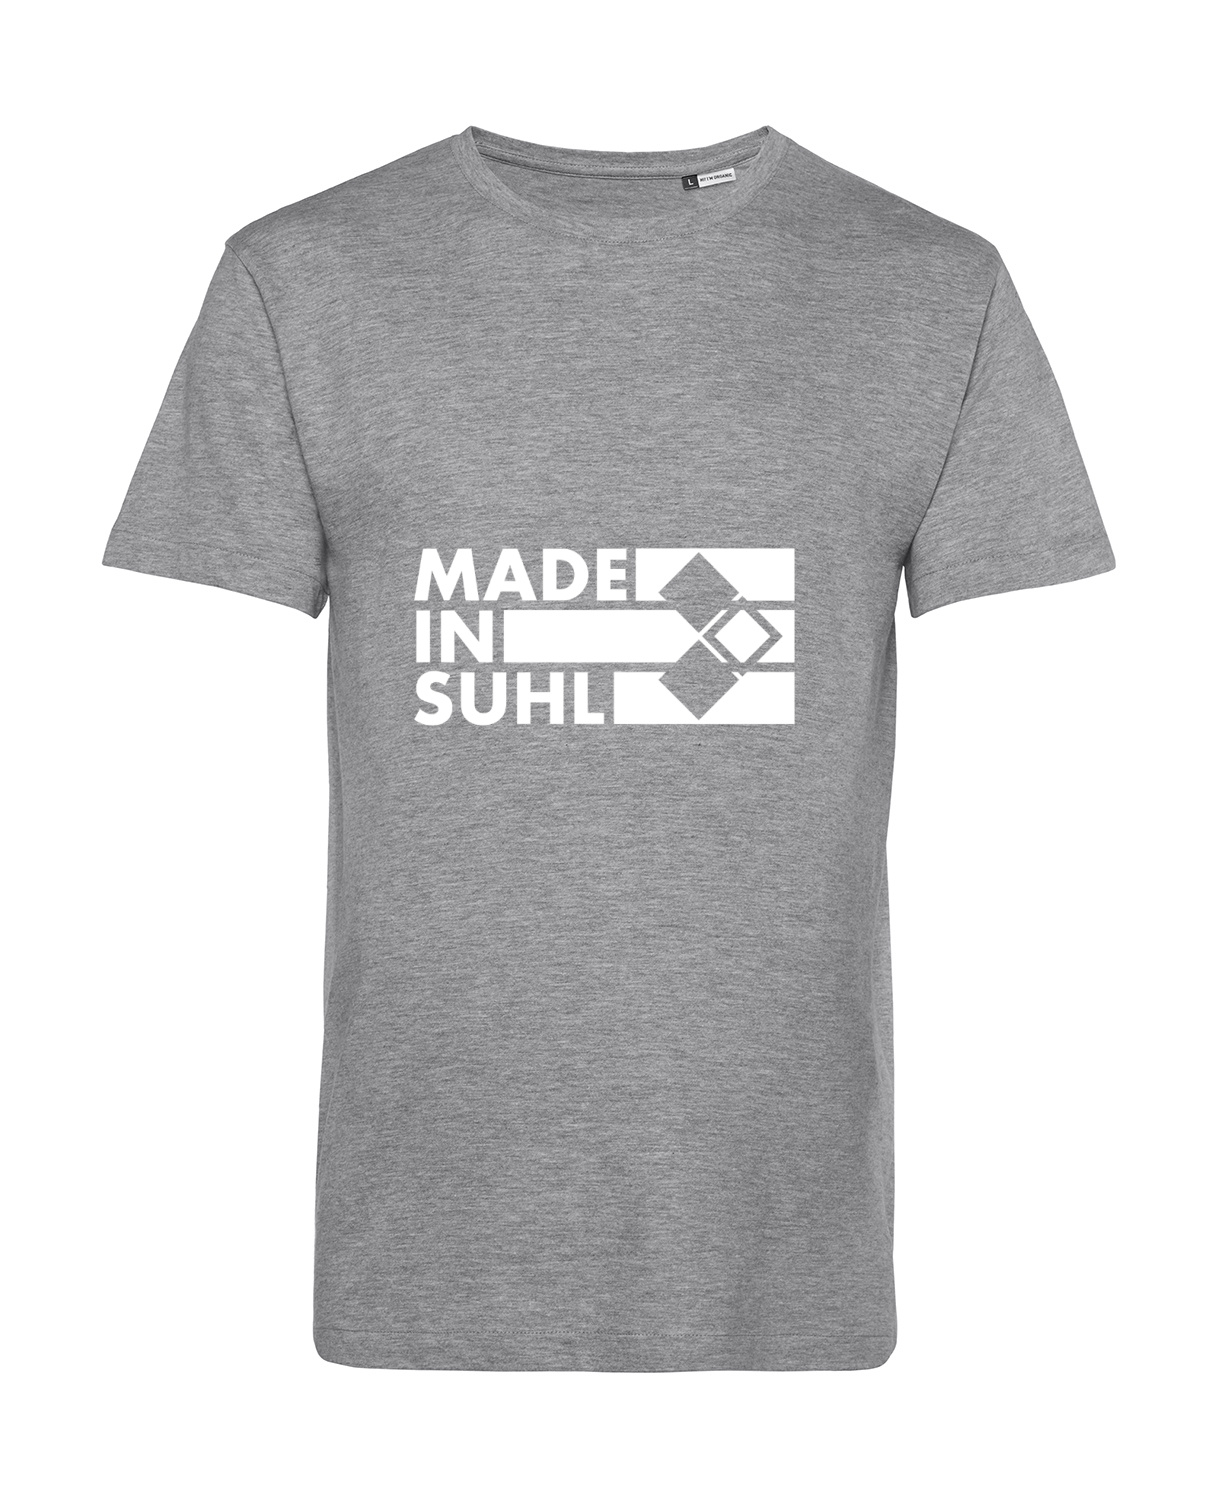 Nachhaltiges T-Shirt Herren 2Takter - Made in Suhl